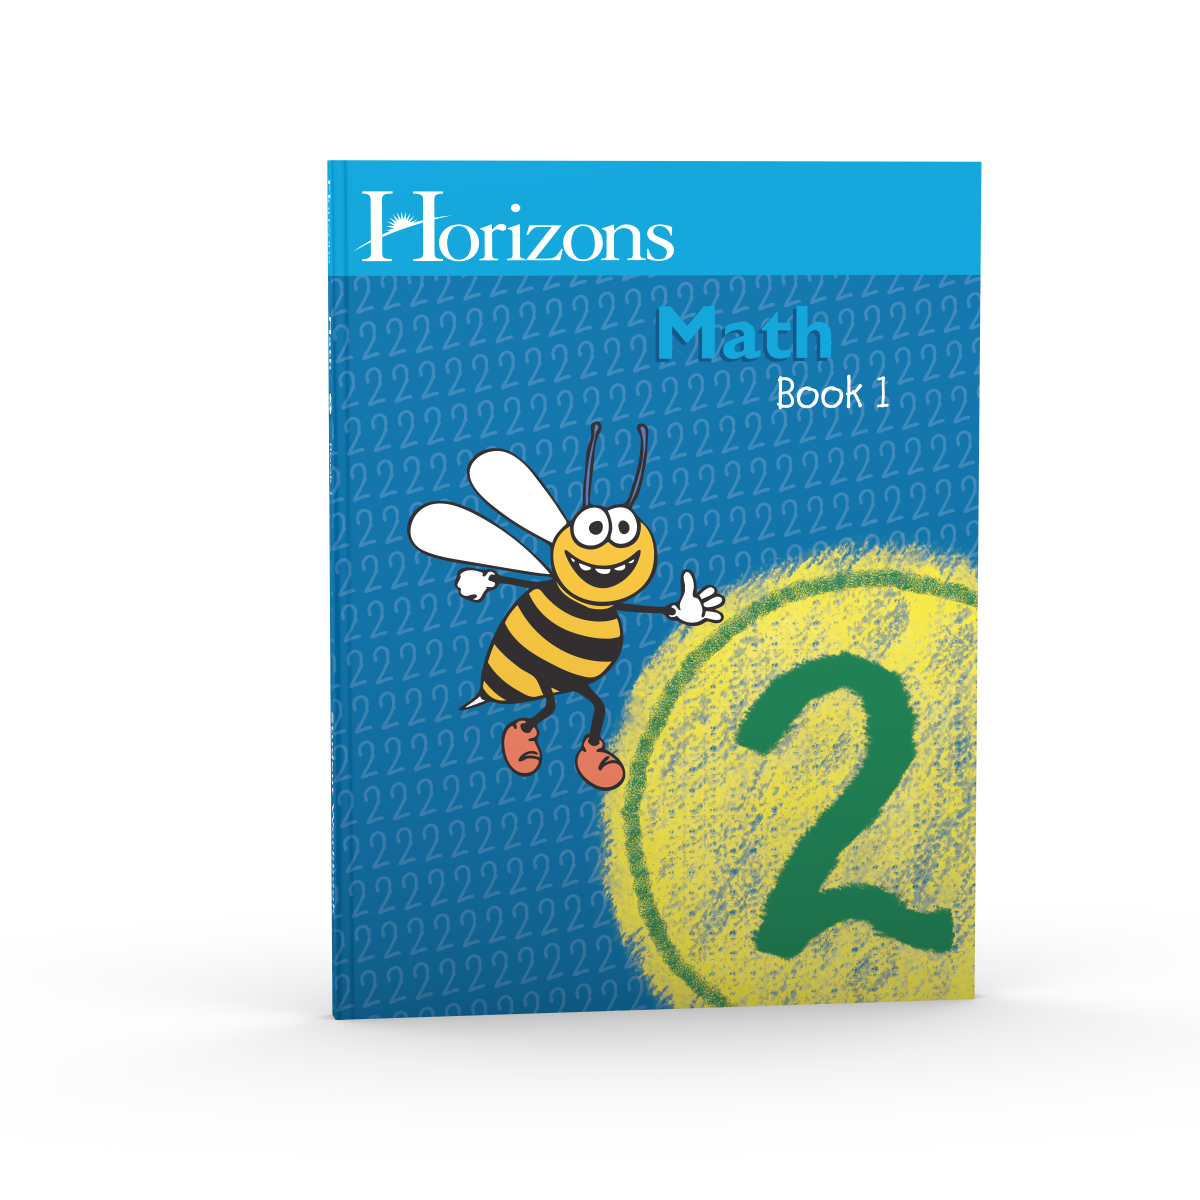 Horizons 2nd Grade Math Student Book 1